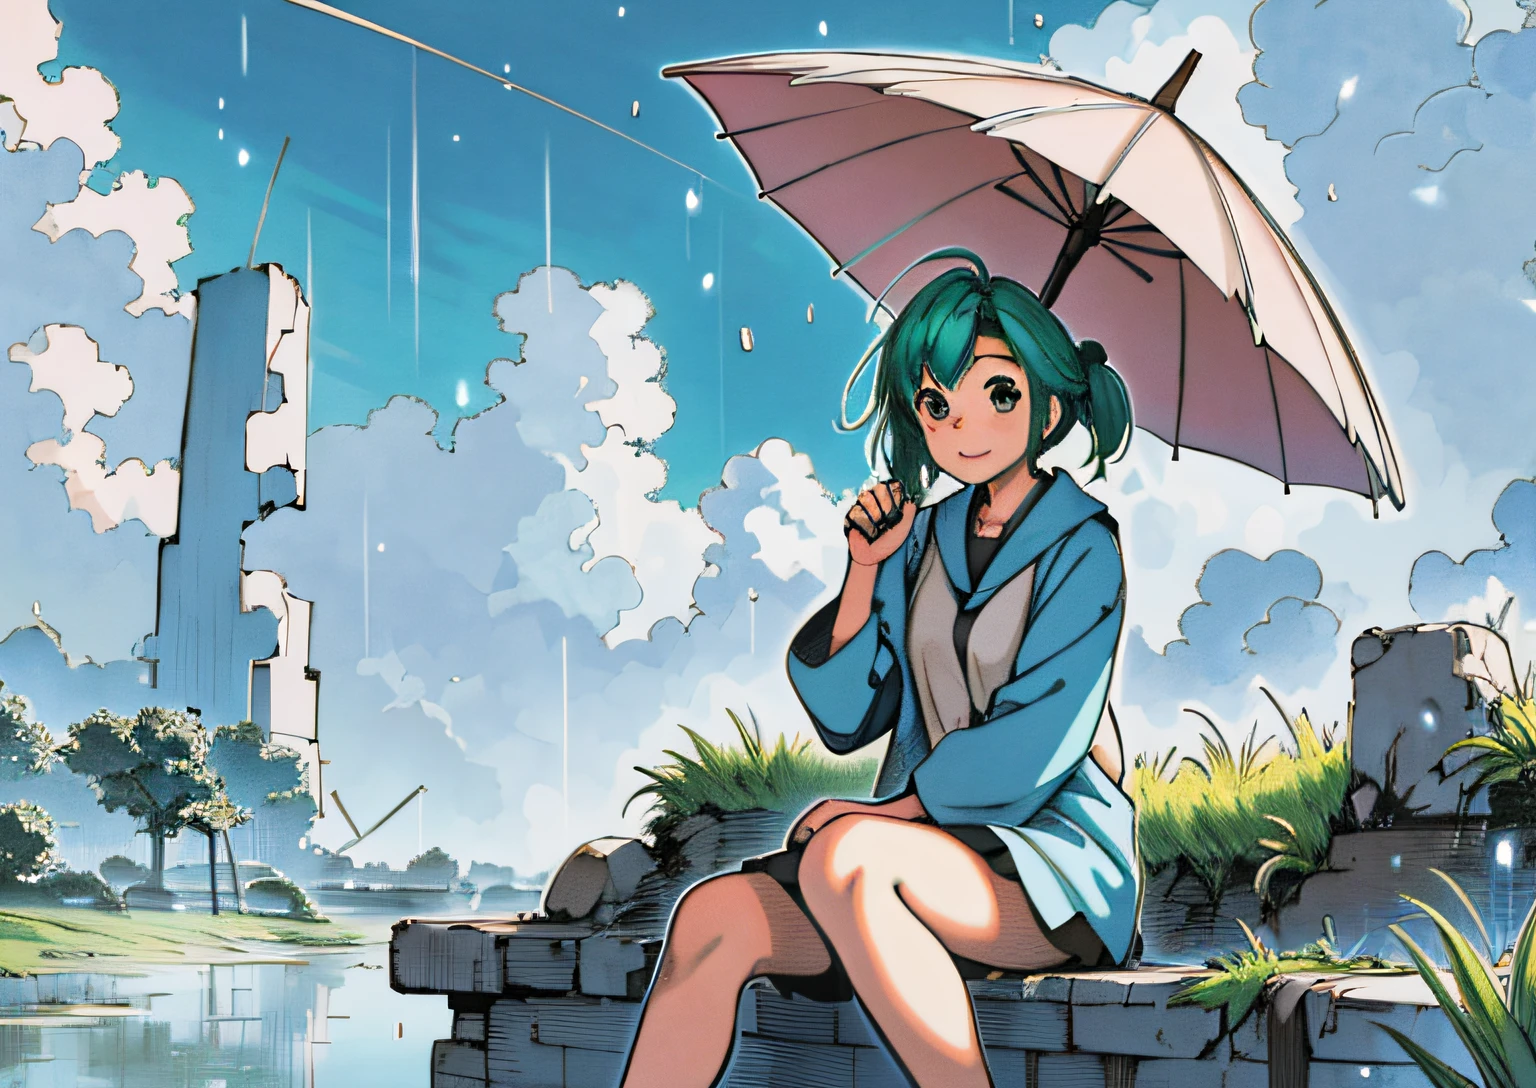 高解像度, 詳細, あしなのスタイル, 1人の女の子, 緑の髪, ワイドショット, 傘を持っている, 雨, 草, 生い茂った, 座っている, 青空, 雲, 遺跡, ハッピー